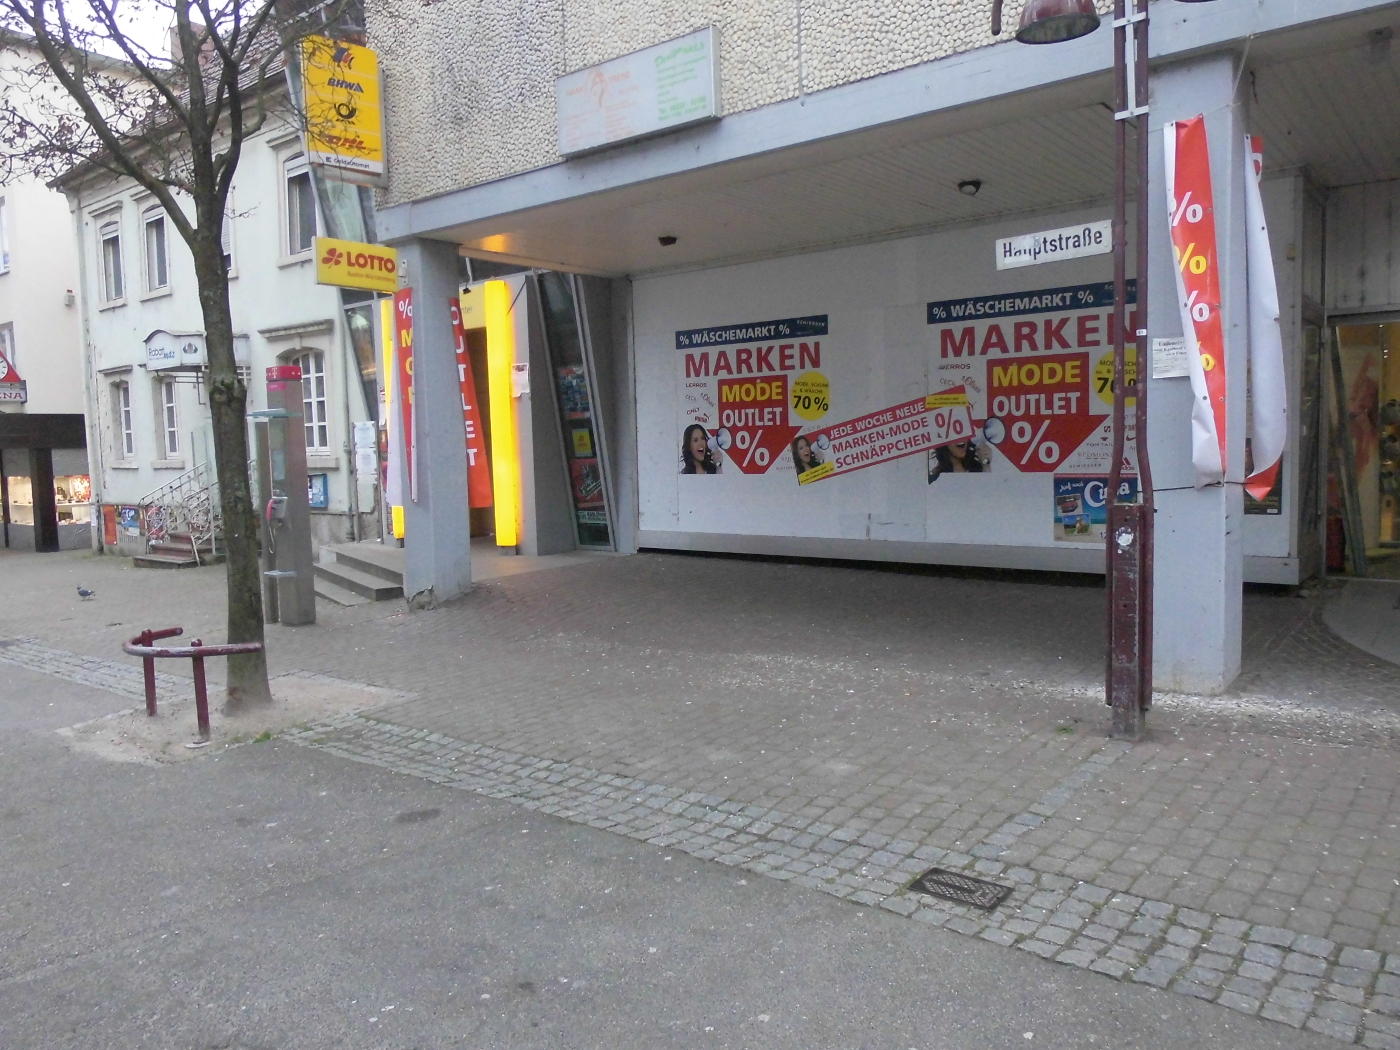 No watchtower advertising in Wiesloch